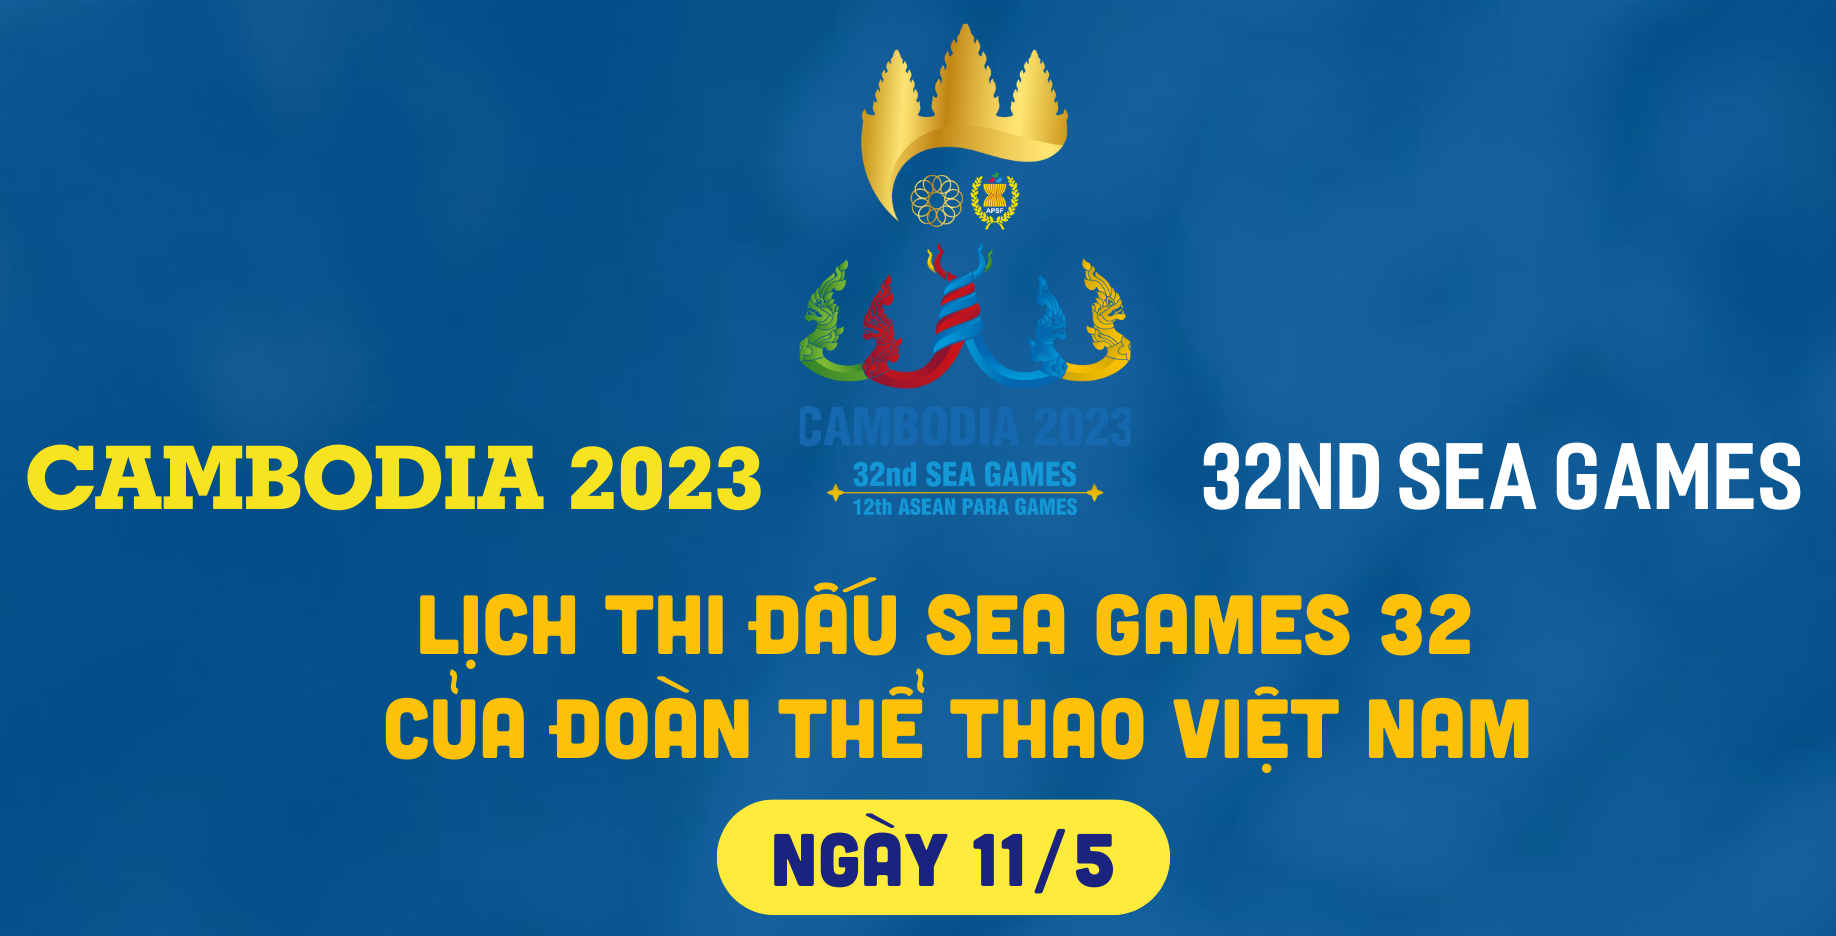 Lịch thi đấu của đoàn thể thao Việt Nam tại SEA Games 32 ngày 11/5